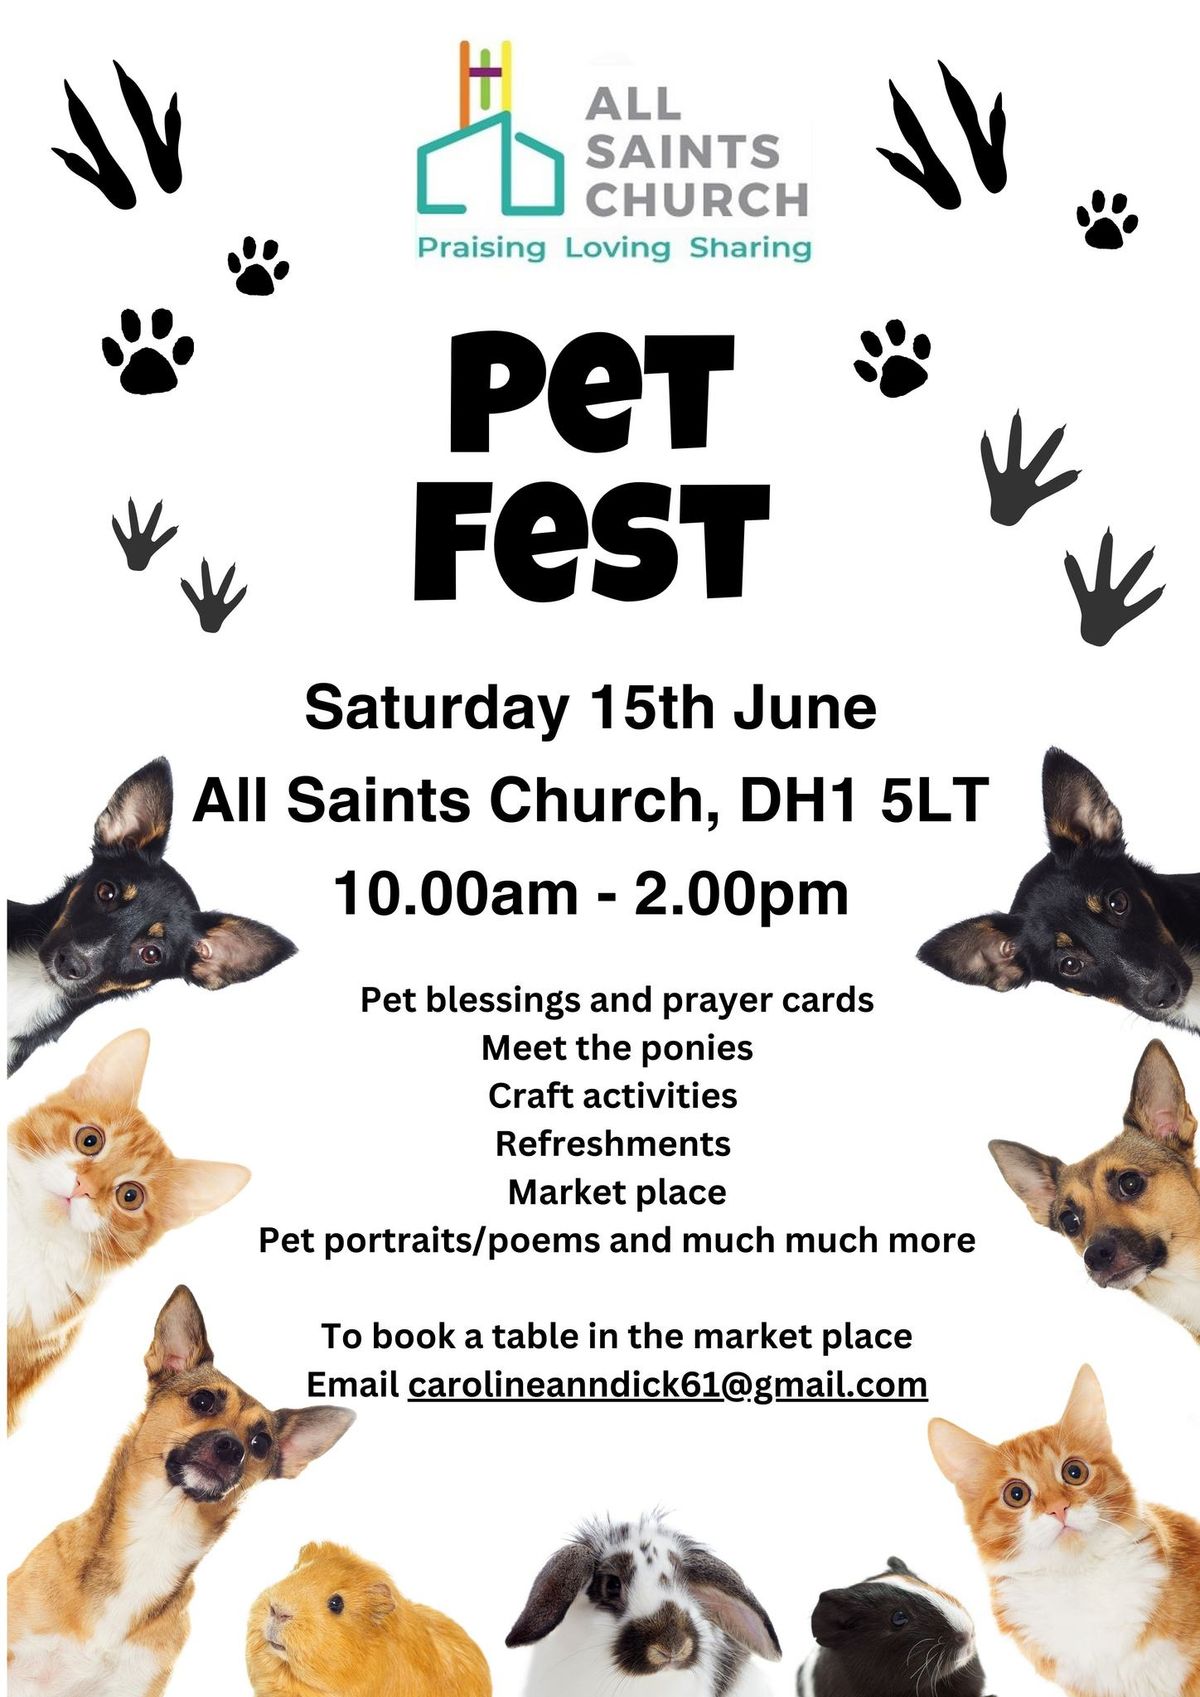 All Saints Pet Fest